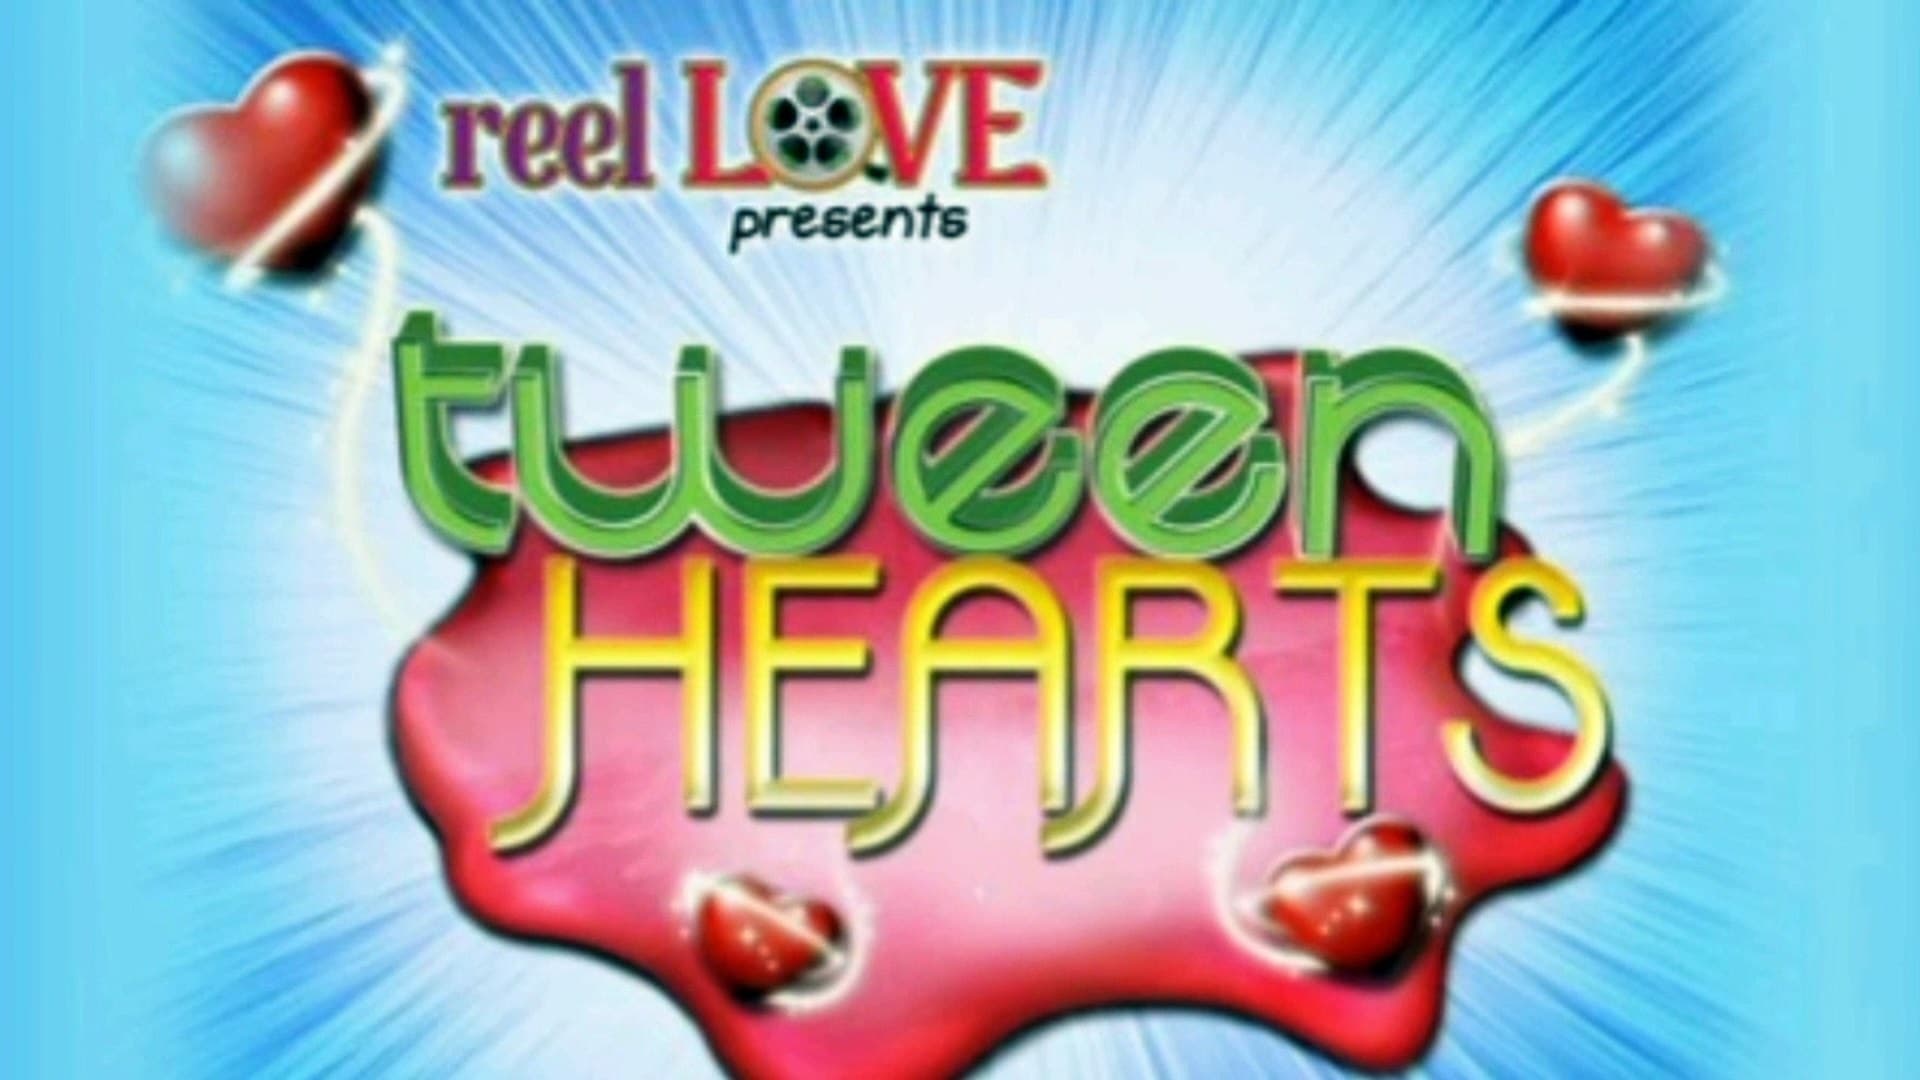 Reel Love Presents Tween Hearts - serie